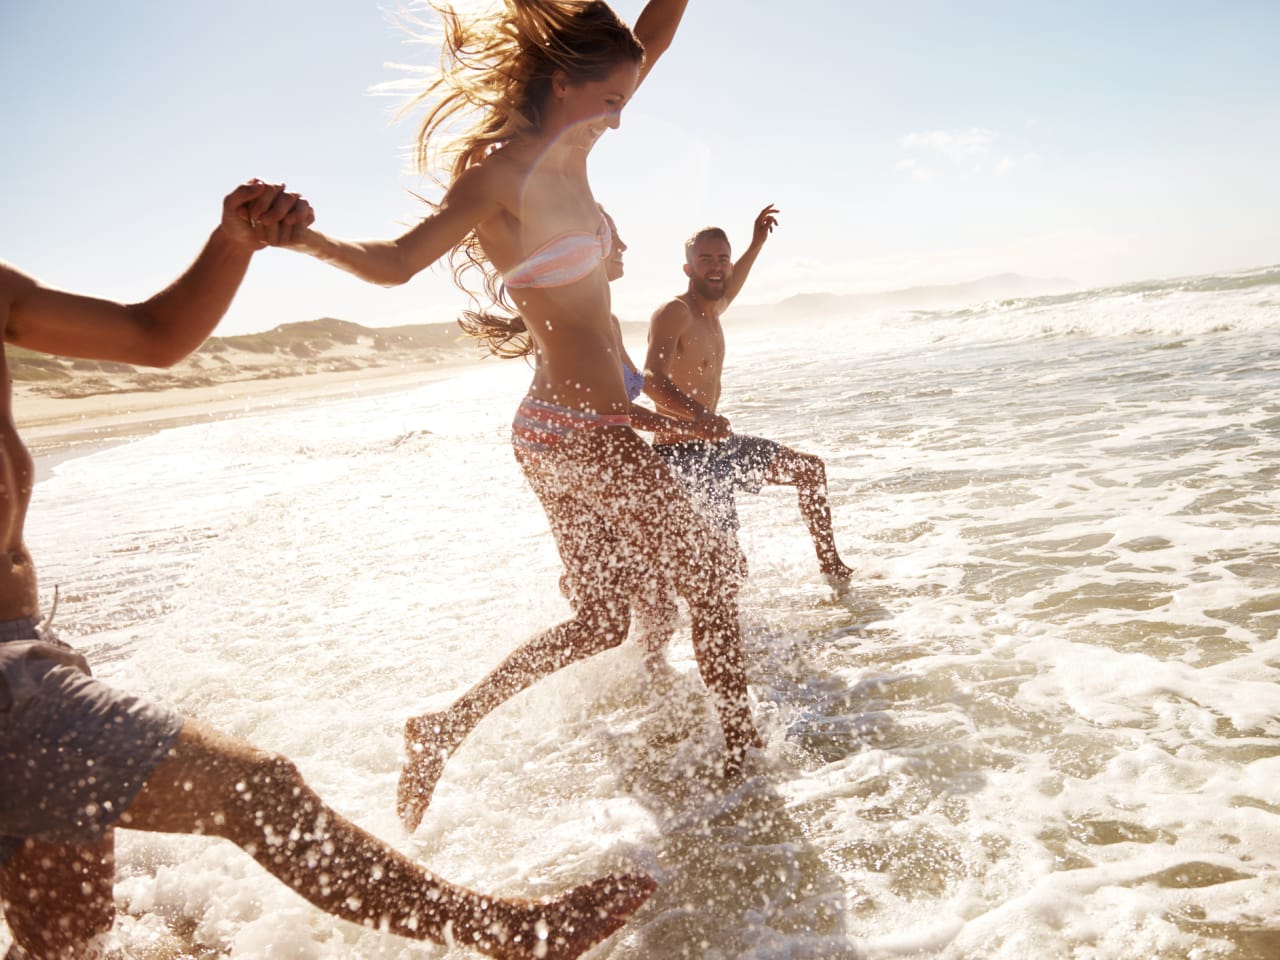 Zwei junge Paare, die am Strand durch das Wasser rennen © iStock.com/pixdeluxe